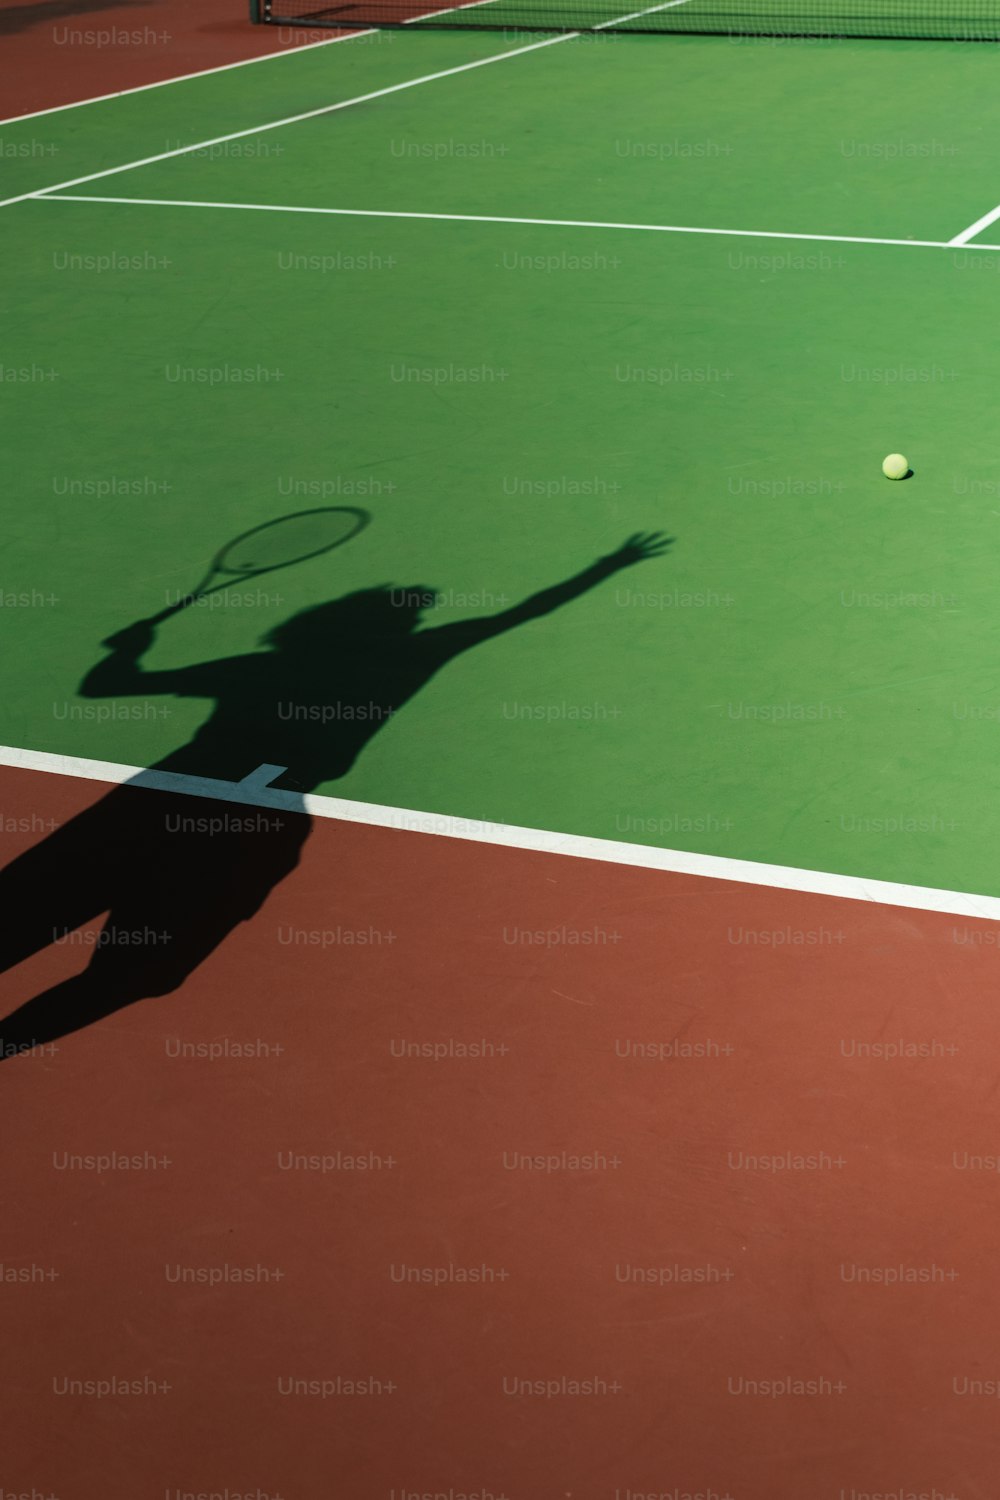 una sombra de una persona en una cancha de tenis